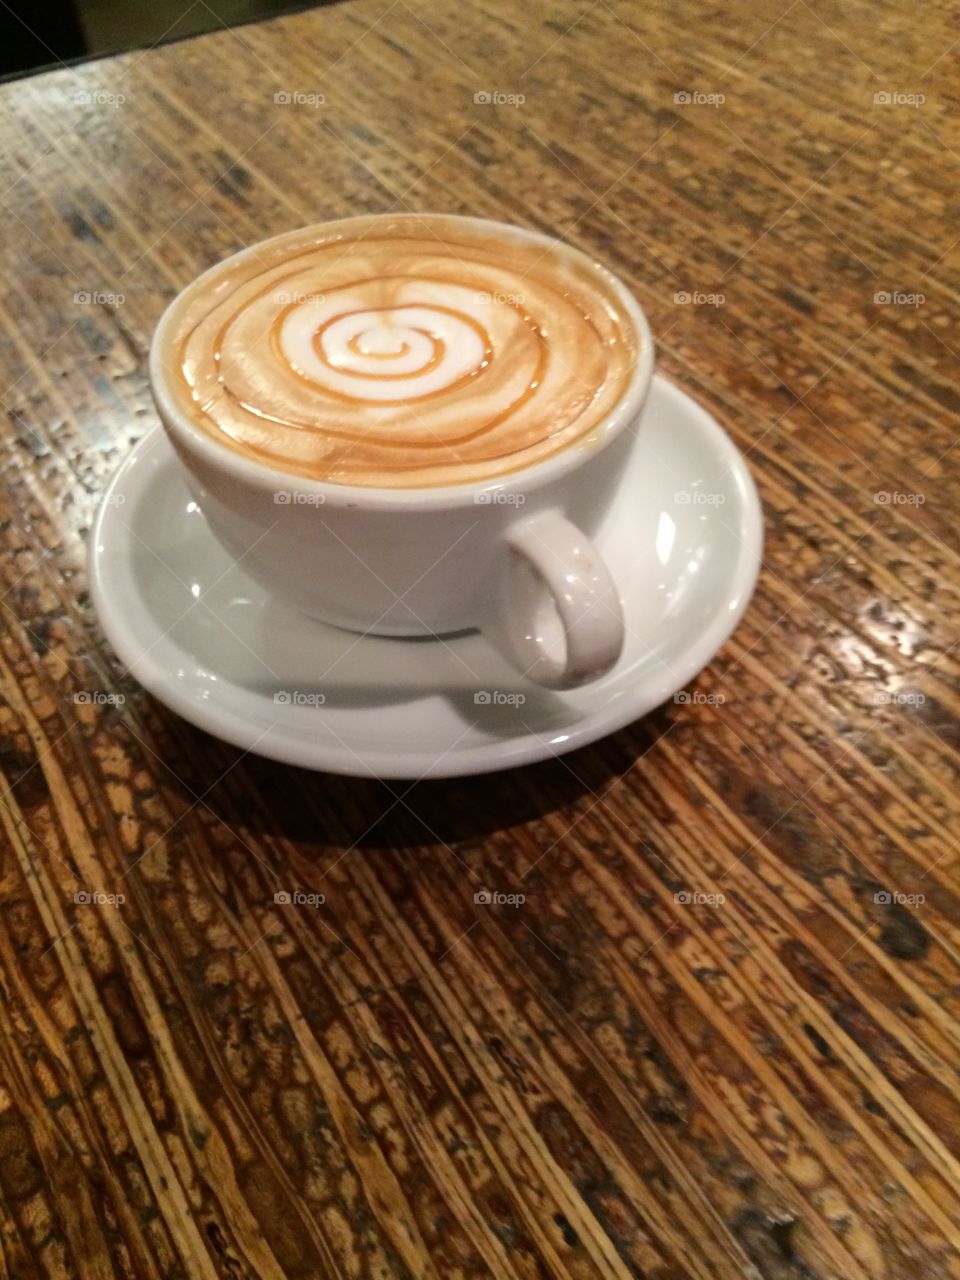 Heart latte art with caramel swirl